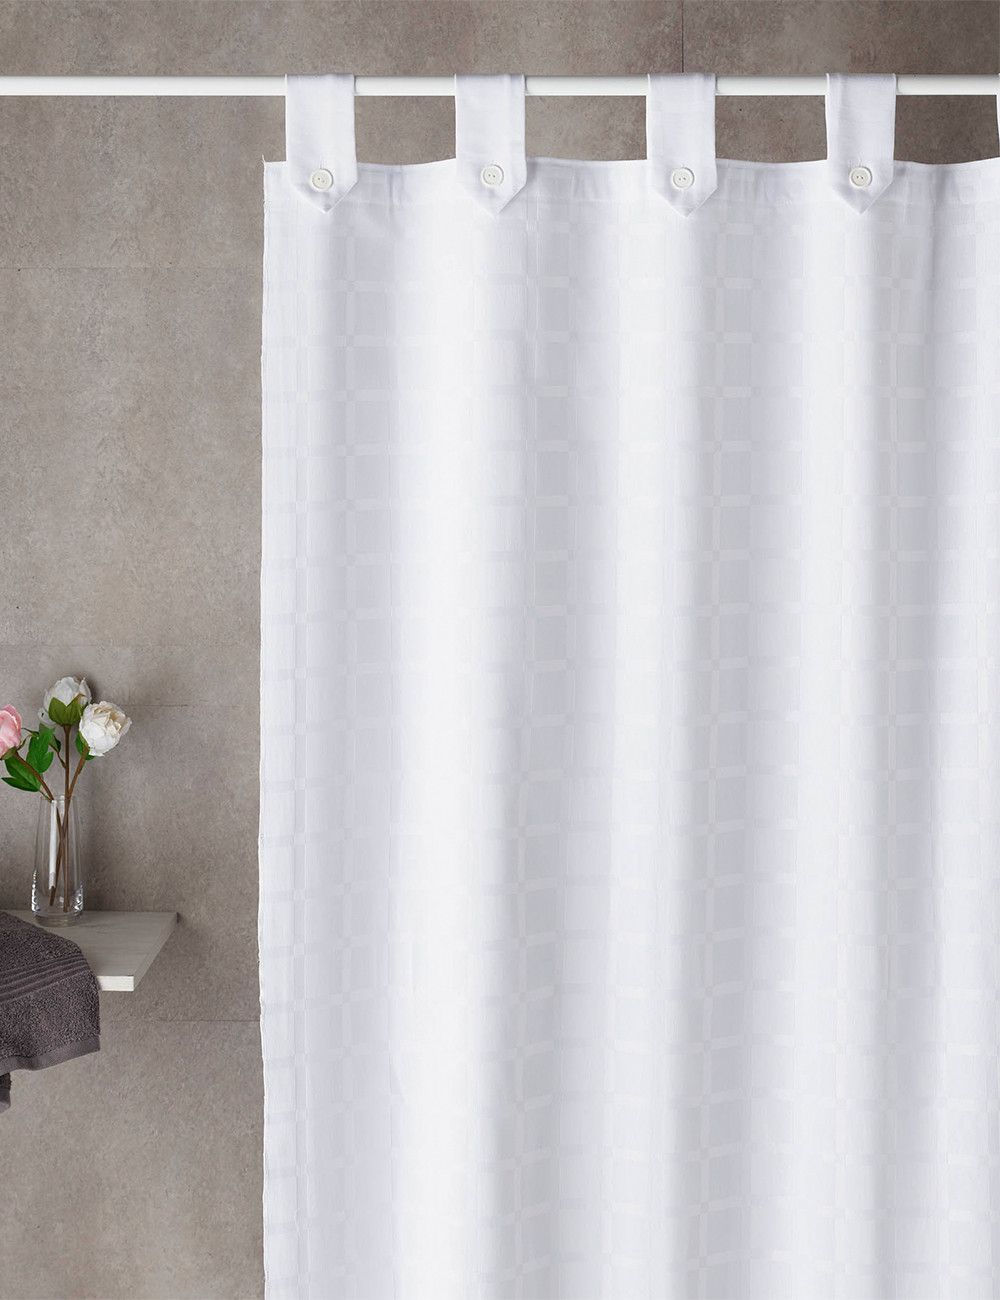 Cómo hacer cortinas de baño  Cortinas de baño, Hacer cortinas